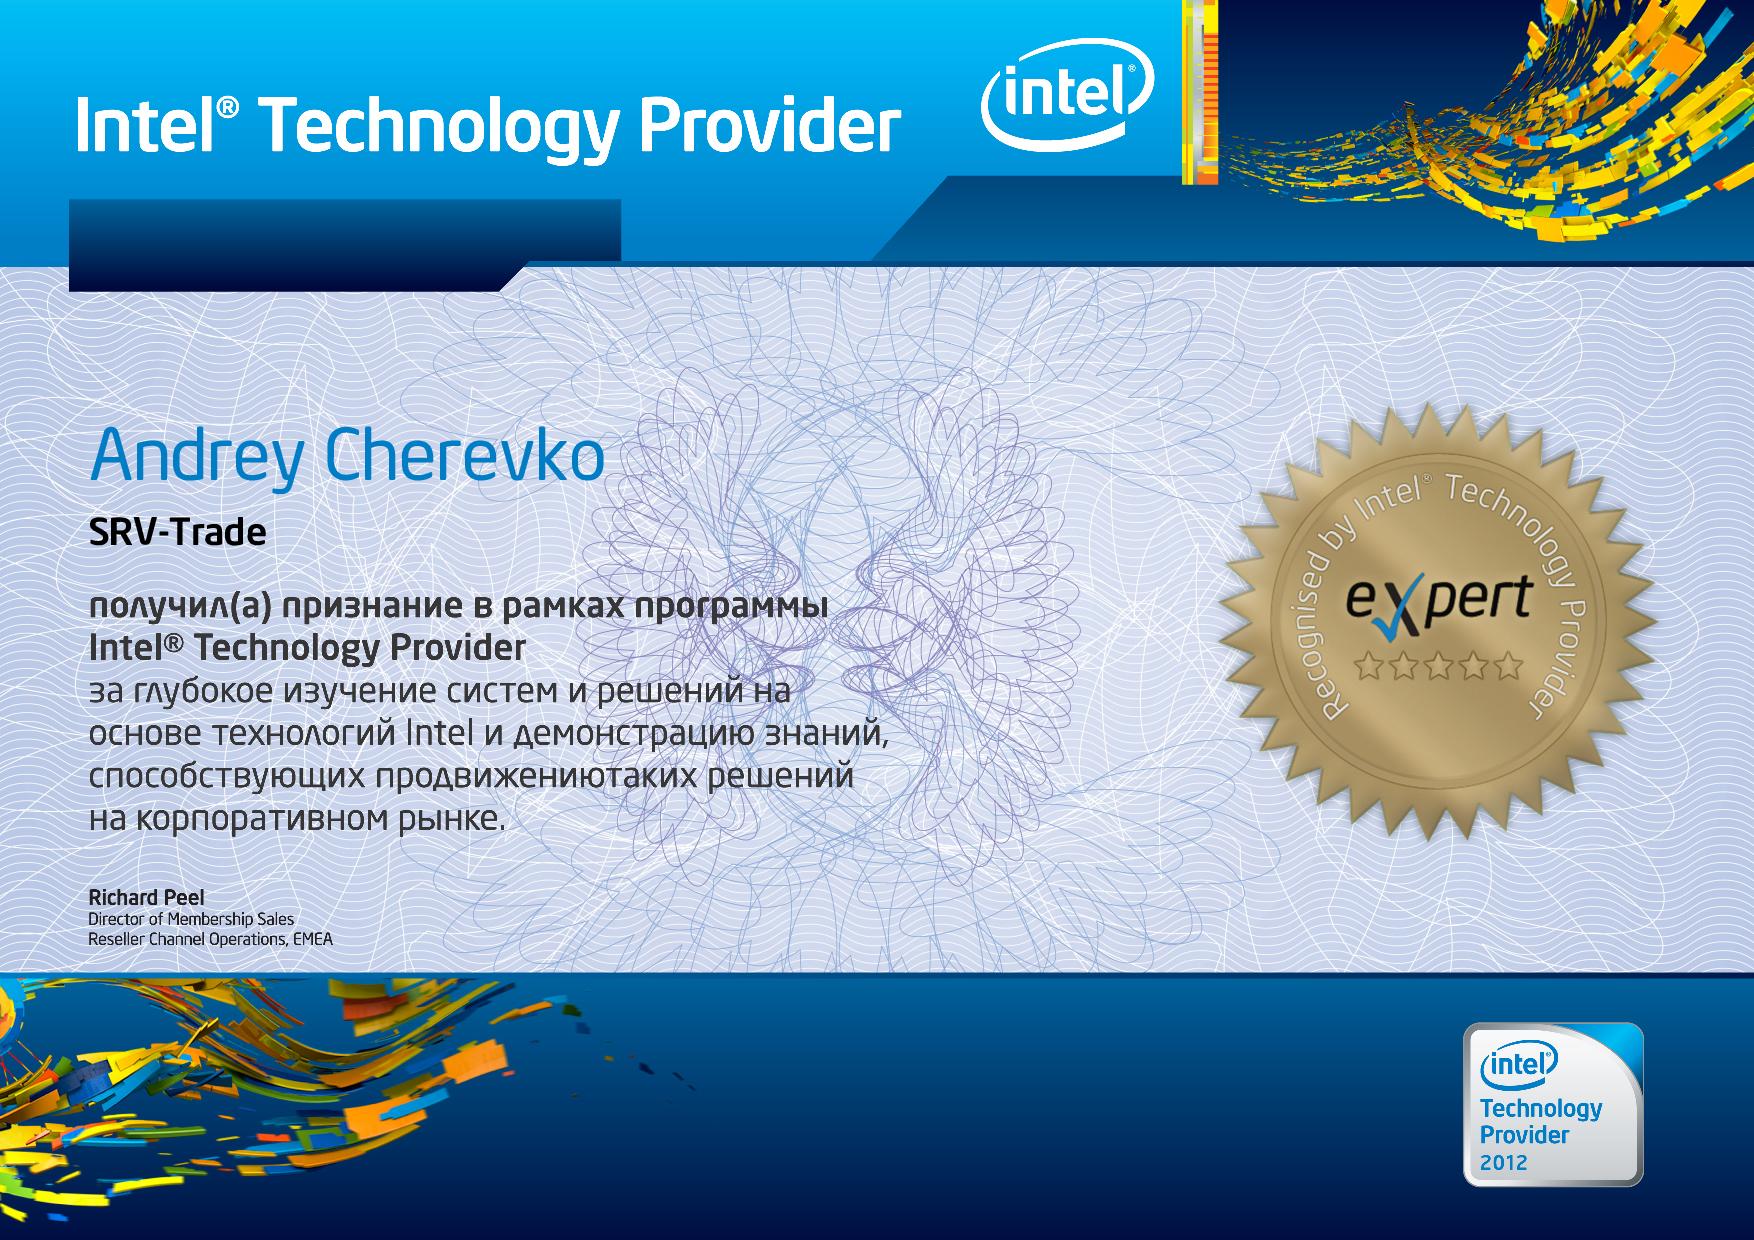 Андрей Черевко, Intel сертифицированный специалист